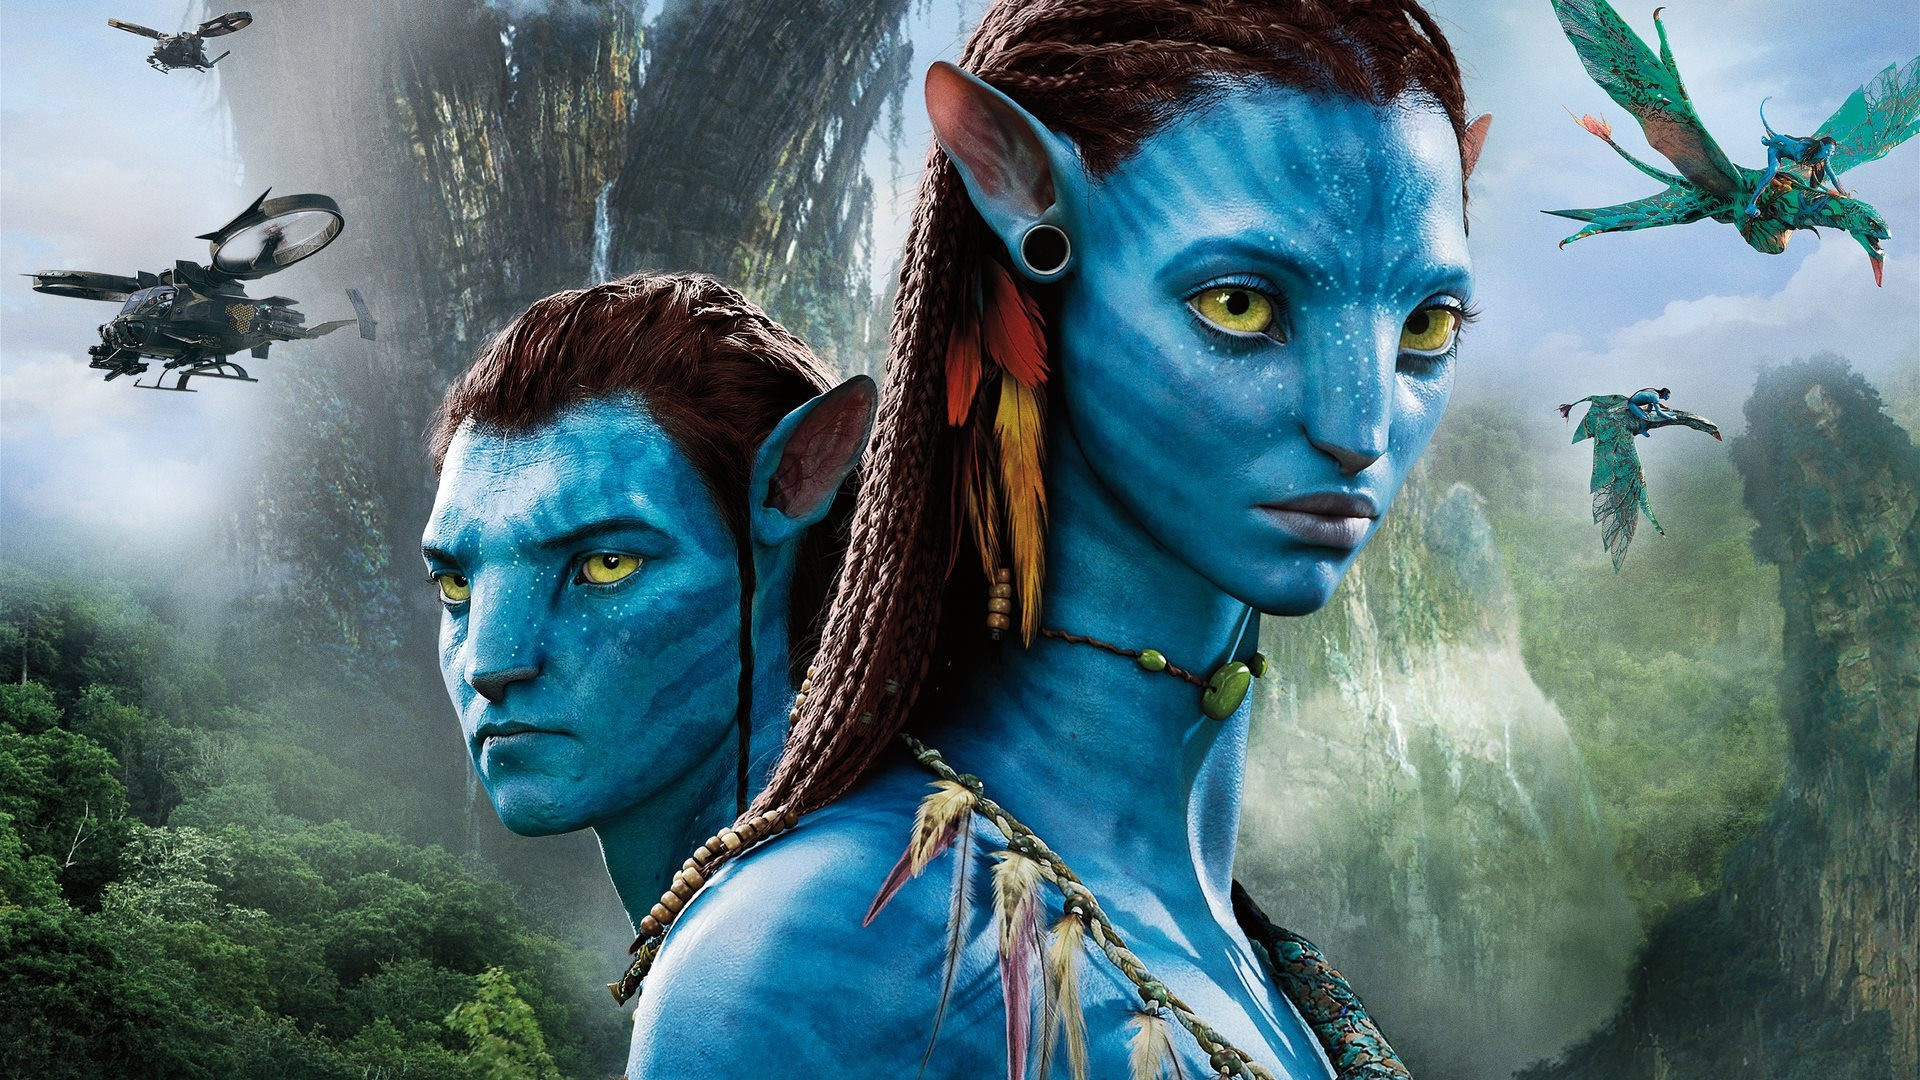 Disney, Avatar - Disney vừa đồng ý mua lại bộ phim bom tấn Avatar và hứa hẹn sẽ mang đến cho bạn những trải nghiệm độc đáo và mới lạ. Với tài năng của những đạo diễn, nhà sản xuất và những diễn viên đẹp trai, xinh đẹp và tài năng, bộ phim này đáng để dành thời gian để thưởng thức.